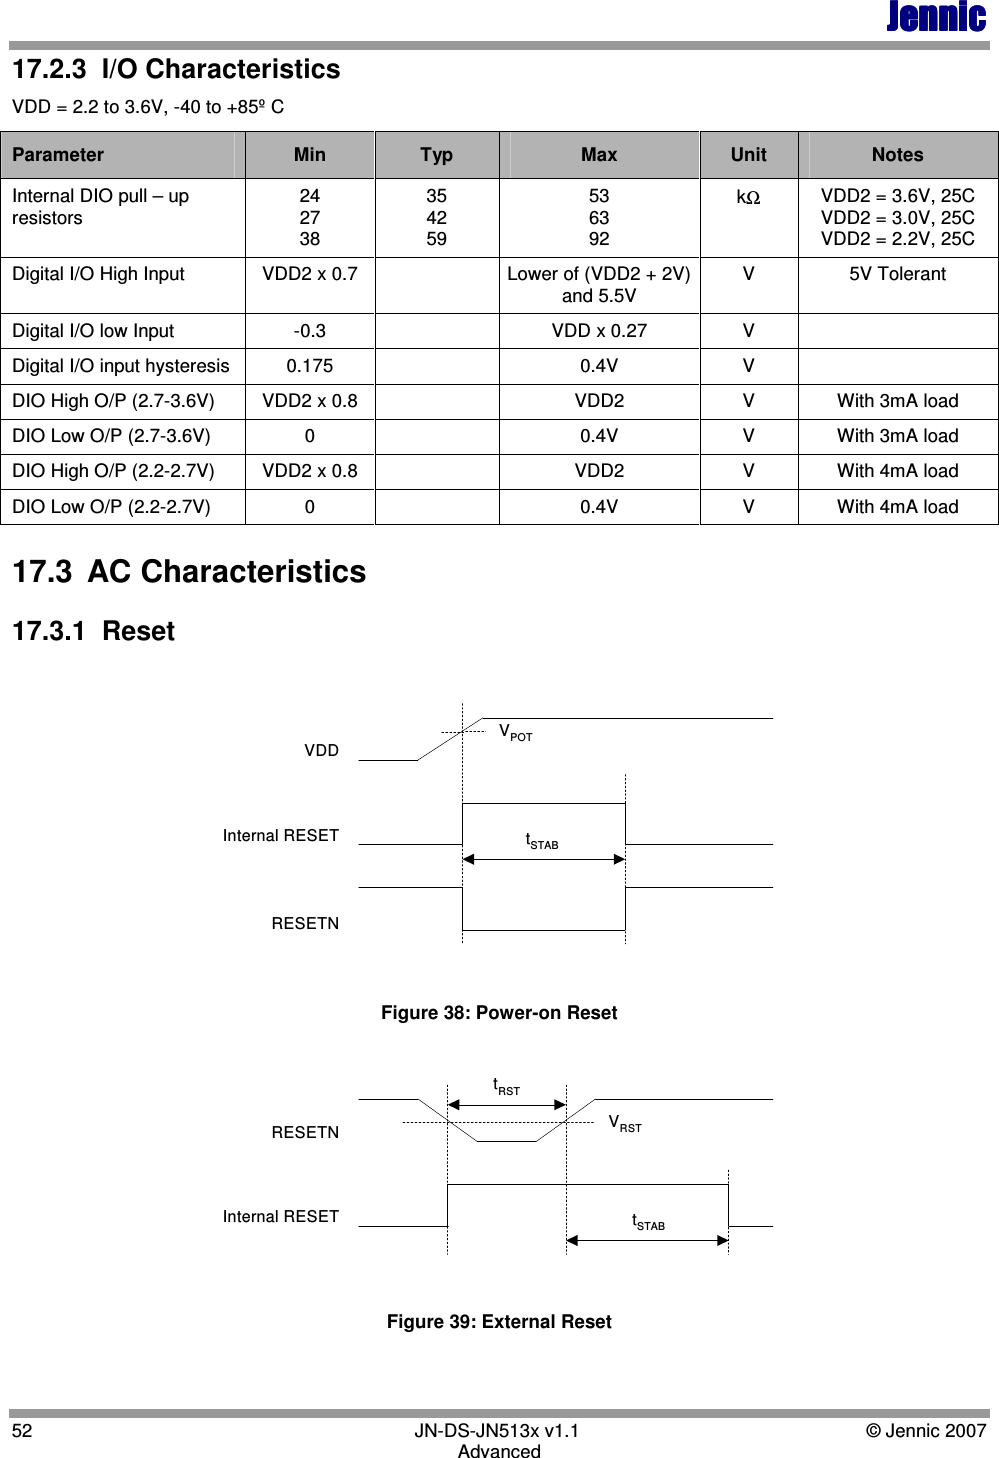 JennicJennicJennicJennic 52        JN-DS-JN513x v1.1  © Jennic 2007 Advanced 17.2.3  I/O Characteristics VDD = 2.2 to 3.6V, -40 to +85º C Parameter  Min  Typ  Max  Unit  Notes Internal DIO pull – up resistors 24 27 38 35 42 59 53 63 92 kΩ VDD2 = 3.6V, 25C VDD2 = 3.0V, 25C VDD2 = 2.2V, 25C Digital I/O High Input  VDD2 x 0.7    Lower of (VDD2 + 2V) and 5.5V V  5V Tolerant Digital I/O low Input  -0.3    VDD x 0.27  V   Digital I/O input hysteresis  0.175    0.4V  V   DIO High O/P (2.7-3.6V)  VDD2 x 0.8    VDD2  V  With 3mA load DIO Low O/P (2.7-3.6V)   0    0.4V  V  With 3mA load DIO High O/P (2.2-2.7V)  VDD2 x 0.8    VDD2  V  With 4mA load DIO Low O/P (2.2-2.7V)  0    0.4V  V  With 4mA load 17.3  AC Characteristics 17.3.1  Reset RESETNInternal RESETVDDVPOTtSTAB Figure 38: Power-on Reset Internal RESETRESETN VRSTtSTABtRST Figure 39: External Reset  